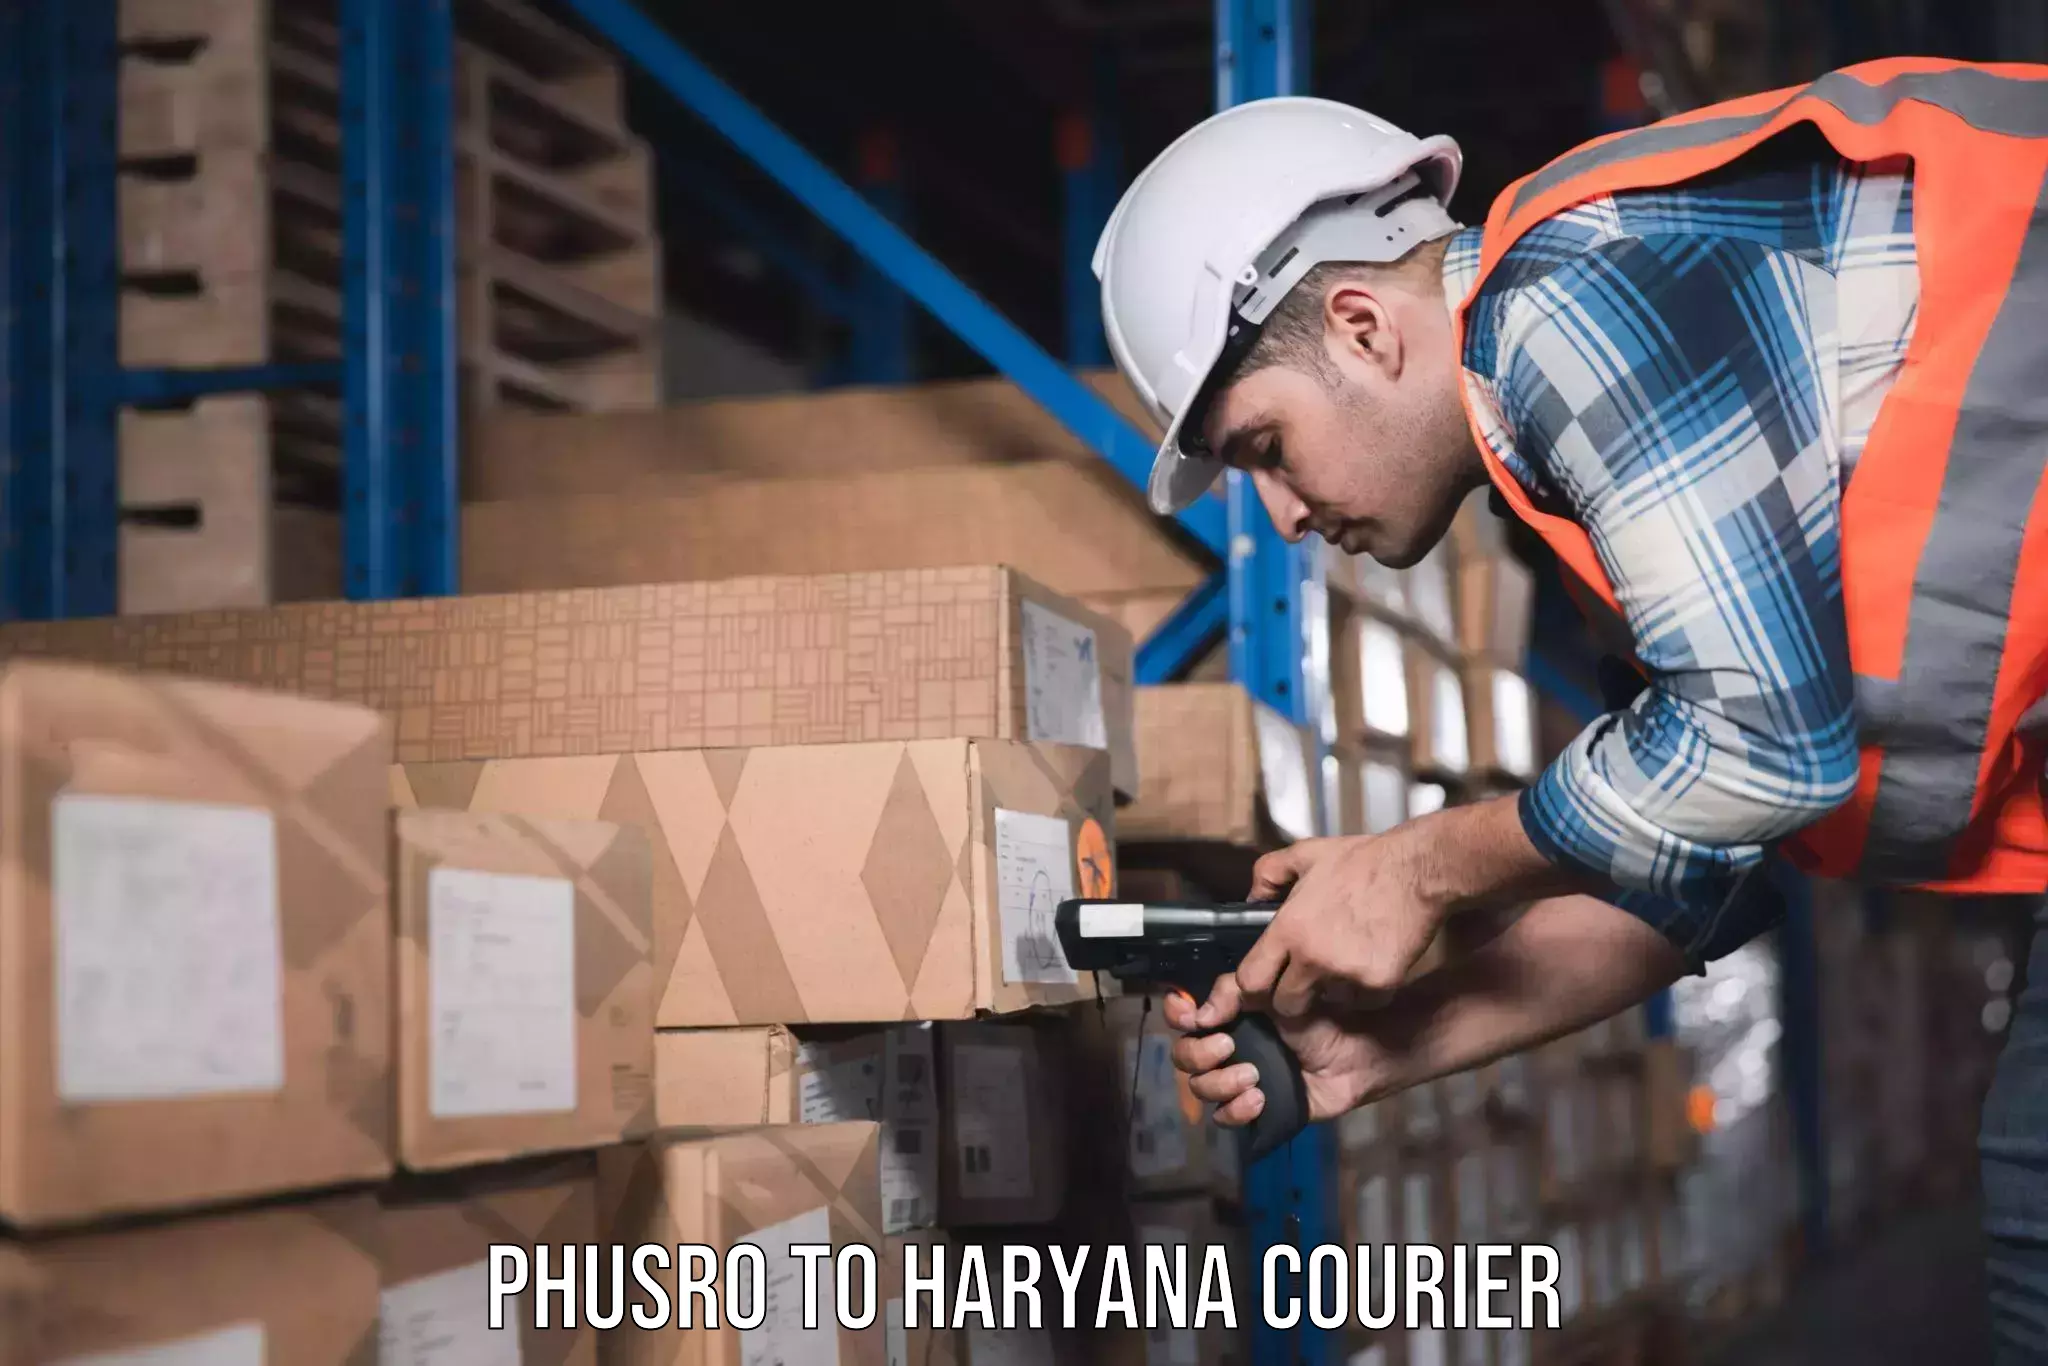 Home goods moving company Phusro to Chirya